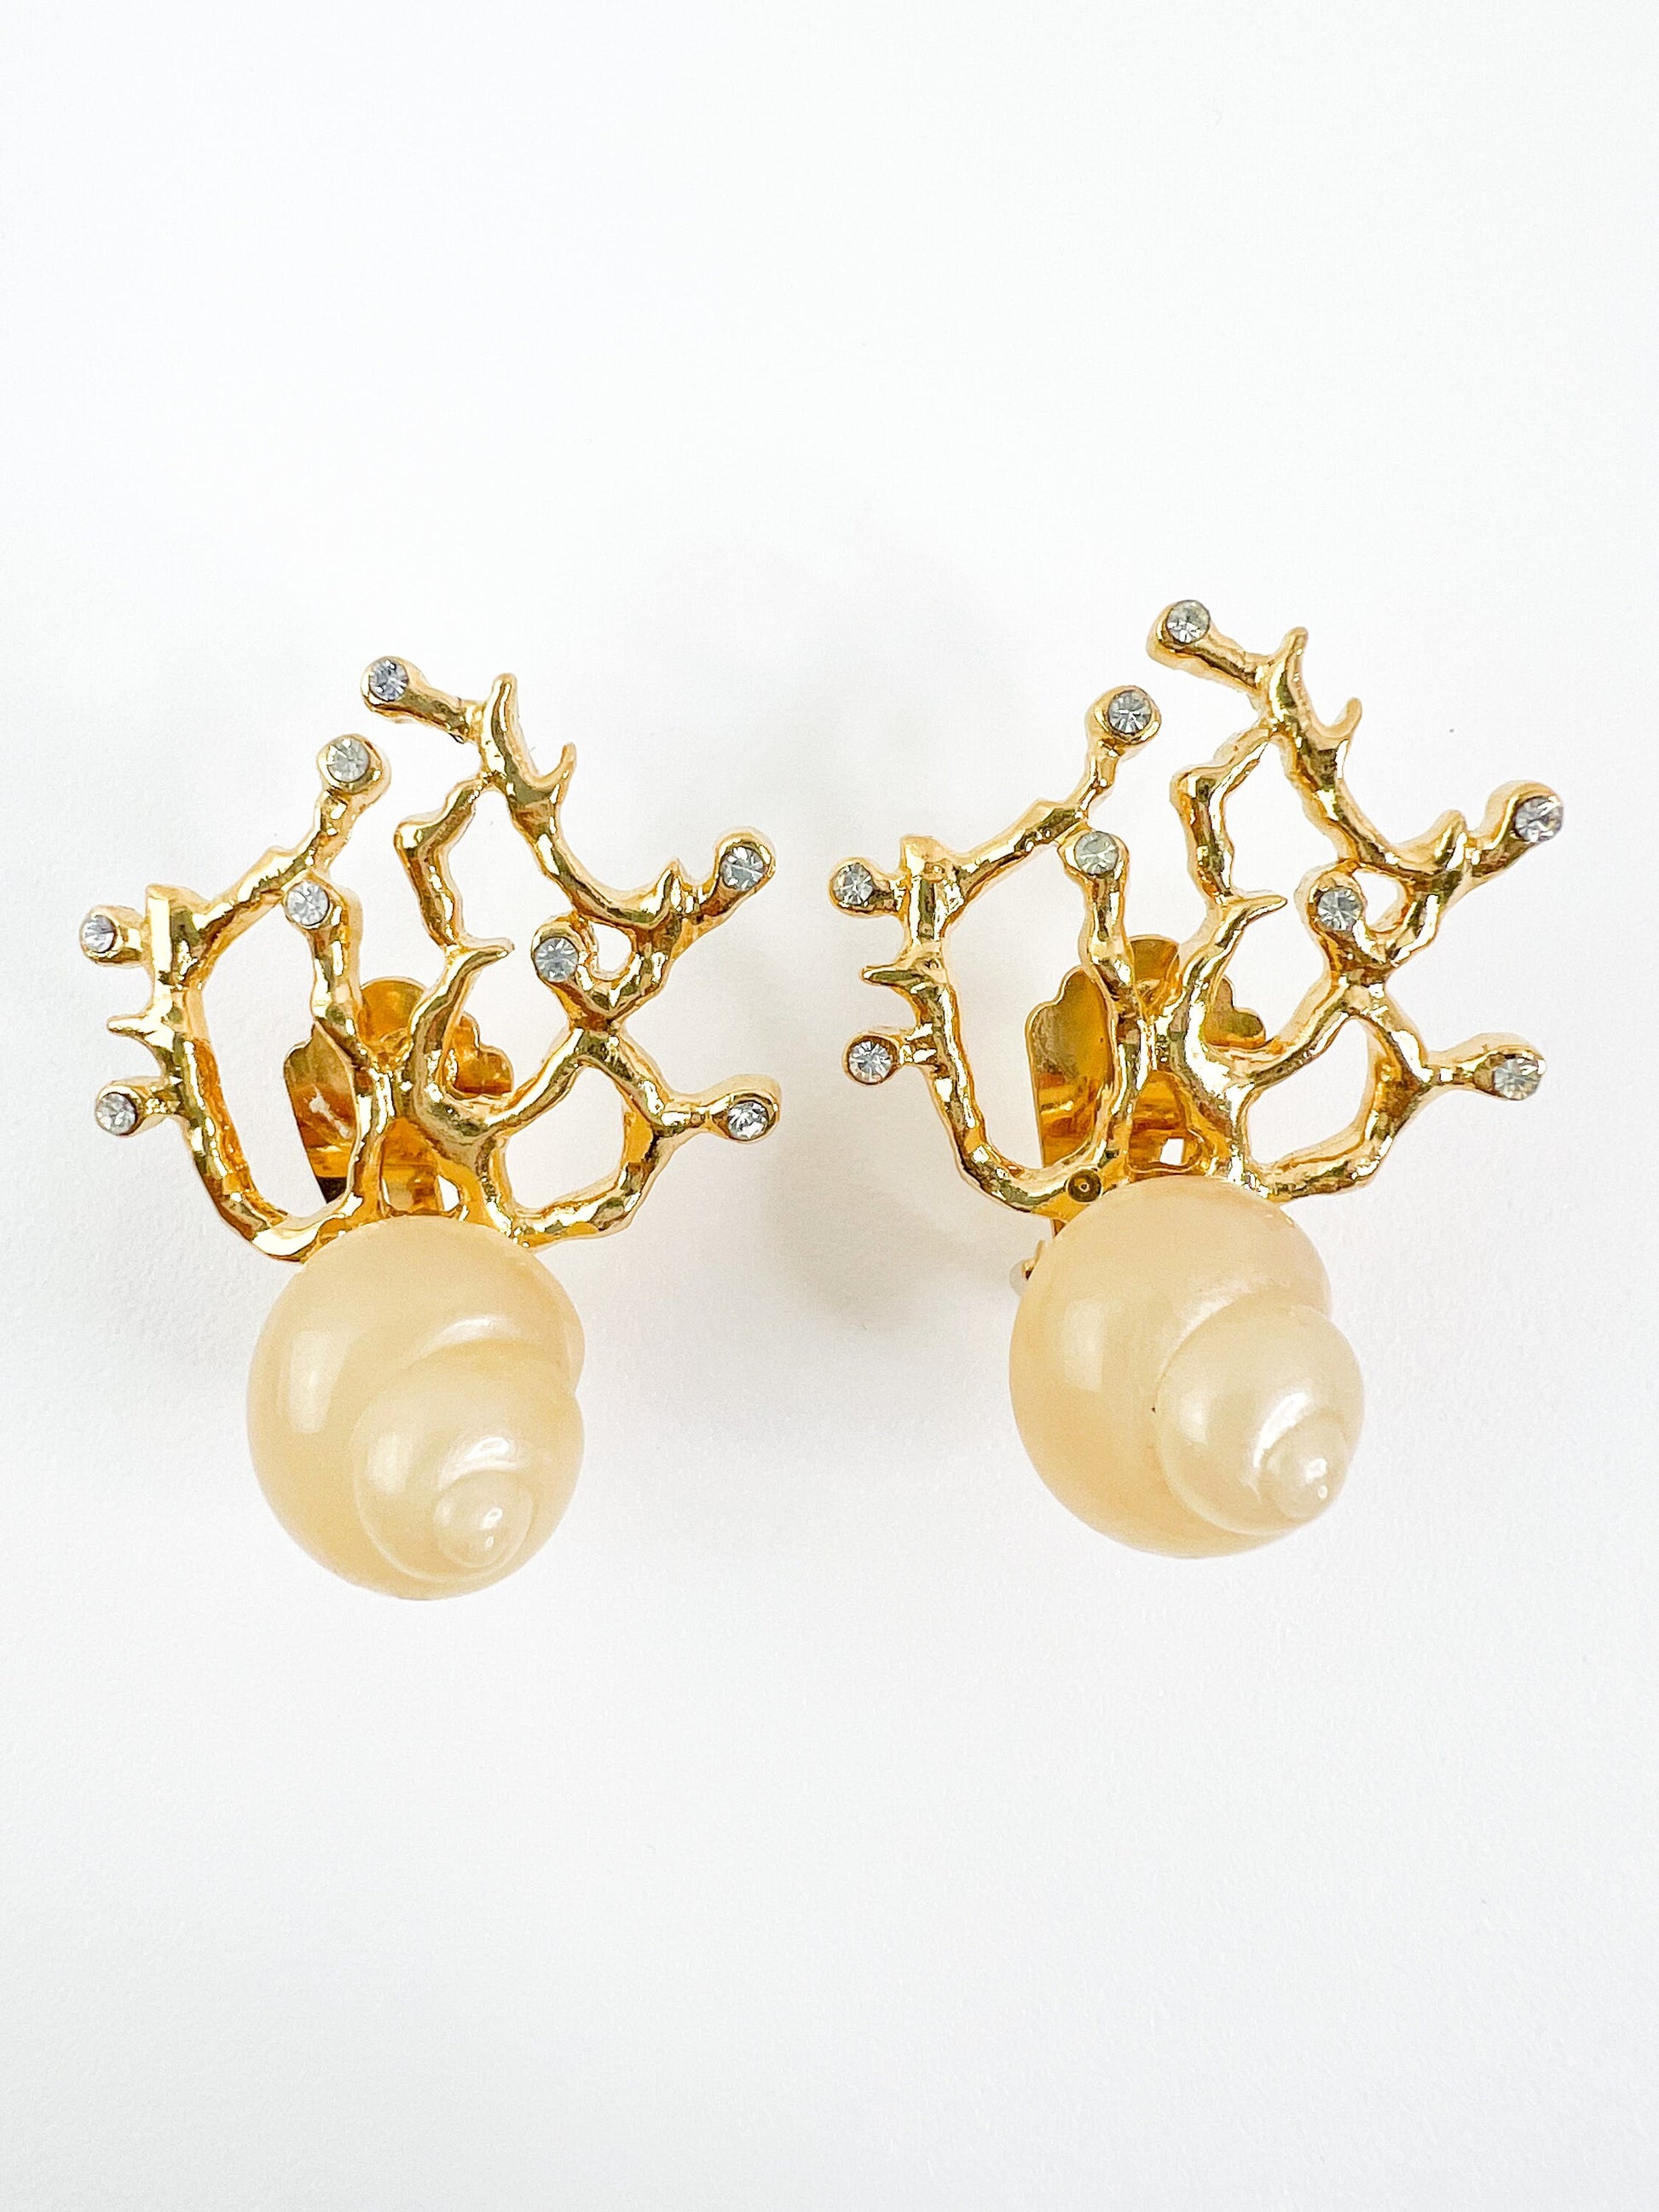 YSL Earrings Vintage, Yves Saint Laurent, Ocean Earrings, Shell Earrings, Coral Earrings, gift for her, gift for mom, Anniversary Gift